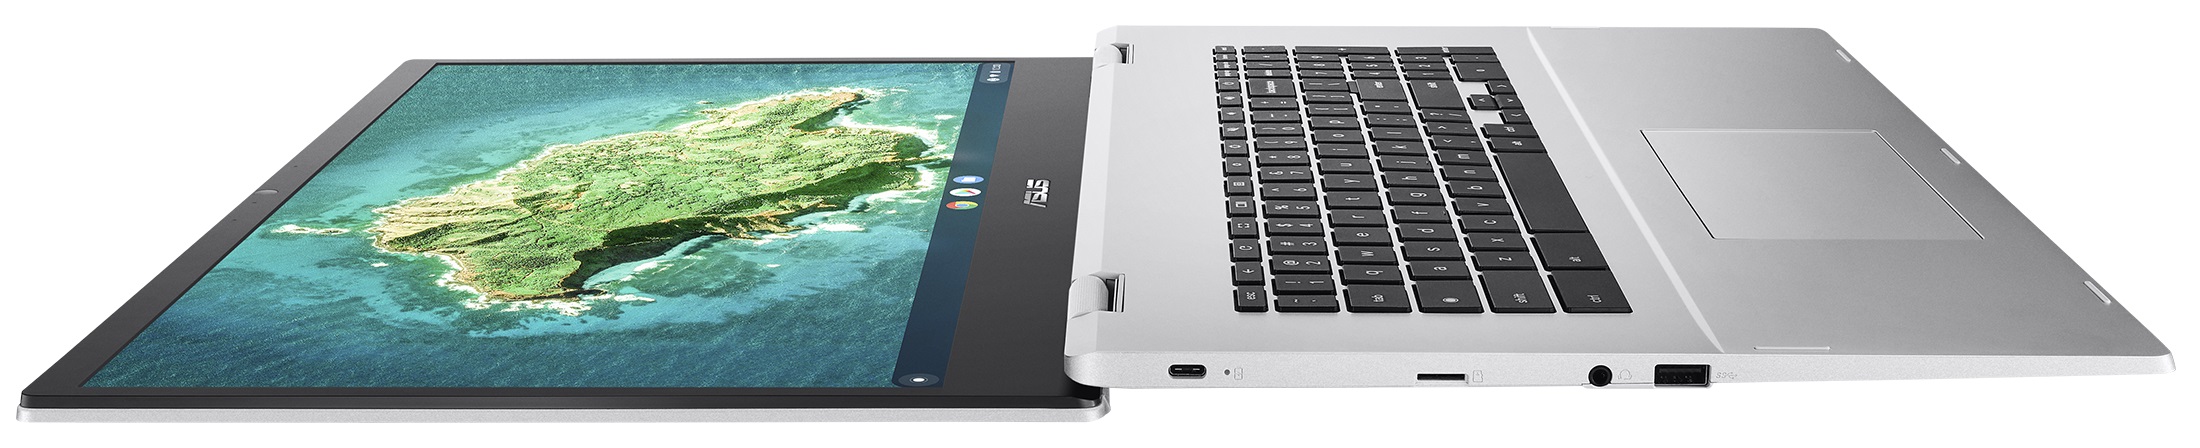 ASUS Chromebook CX1 (CX1700) - Technische Daten, Tests und Preise |  LaptopMedia DE